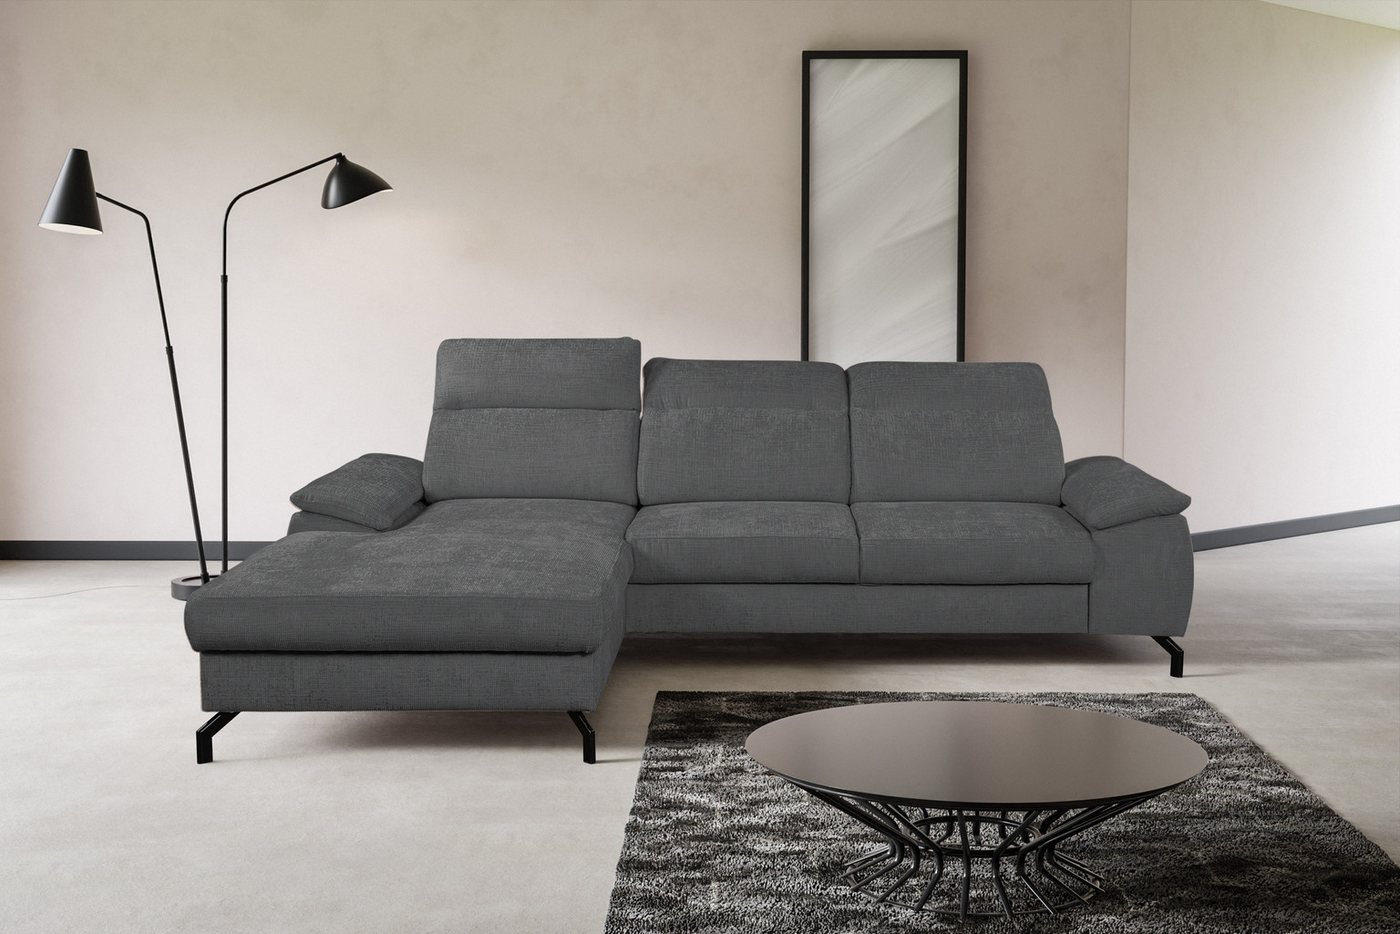 WERK2 Ecksofa Panama, Modernes Sofa mit Schlaffunktion, Bettkasten, Kopfteile verstellbar von WERK2